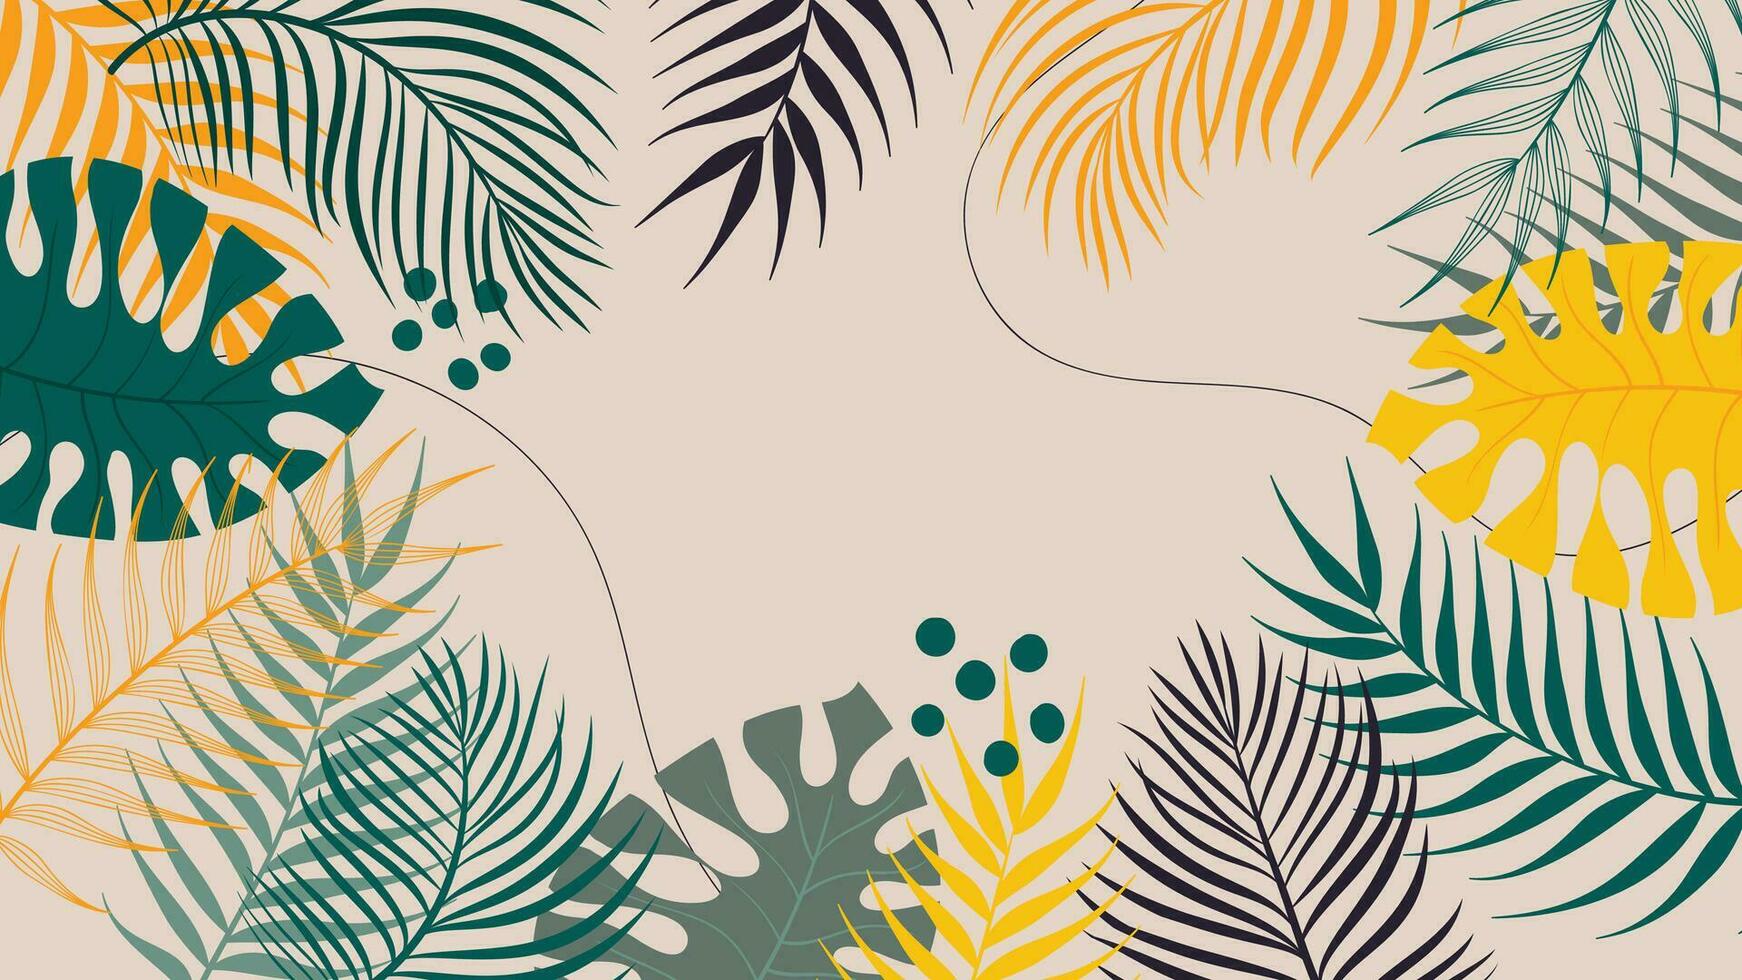 skog tropisk bakgrund vektor illustration. djungel växter, monstera, handflatan löv, exotisk sommartid stil. botanisk bakgrund design för dekoration, tapet, produkt presentation, varumärke.